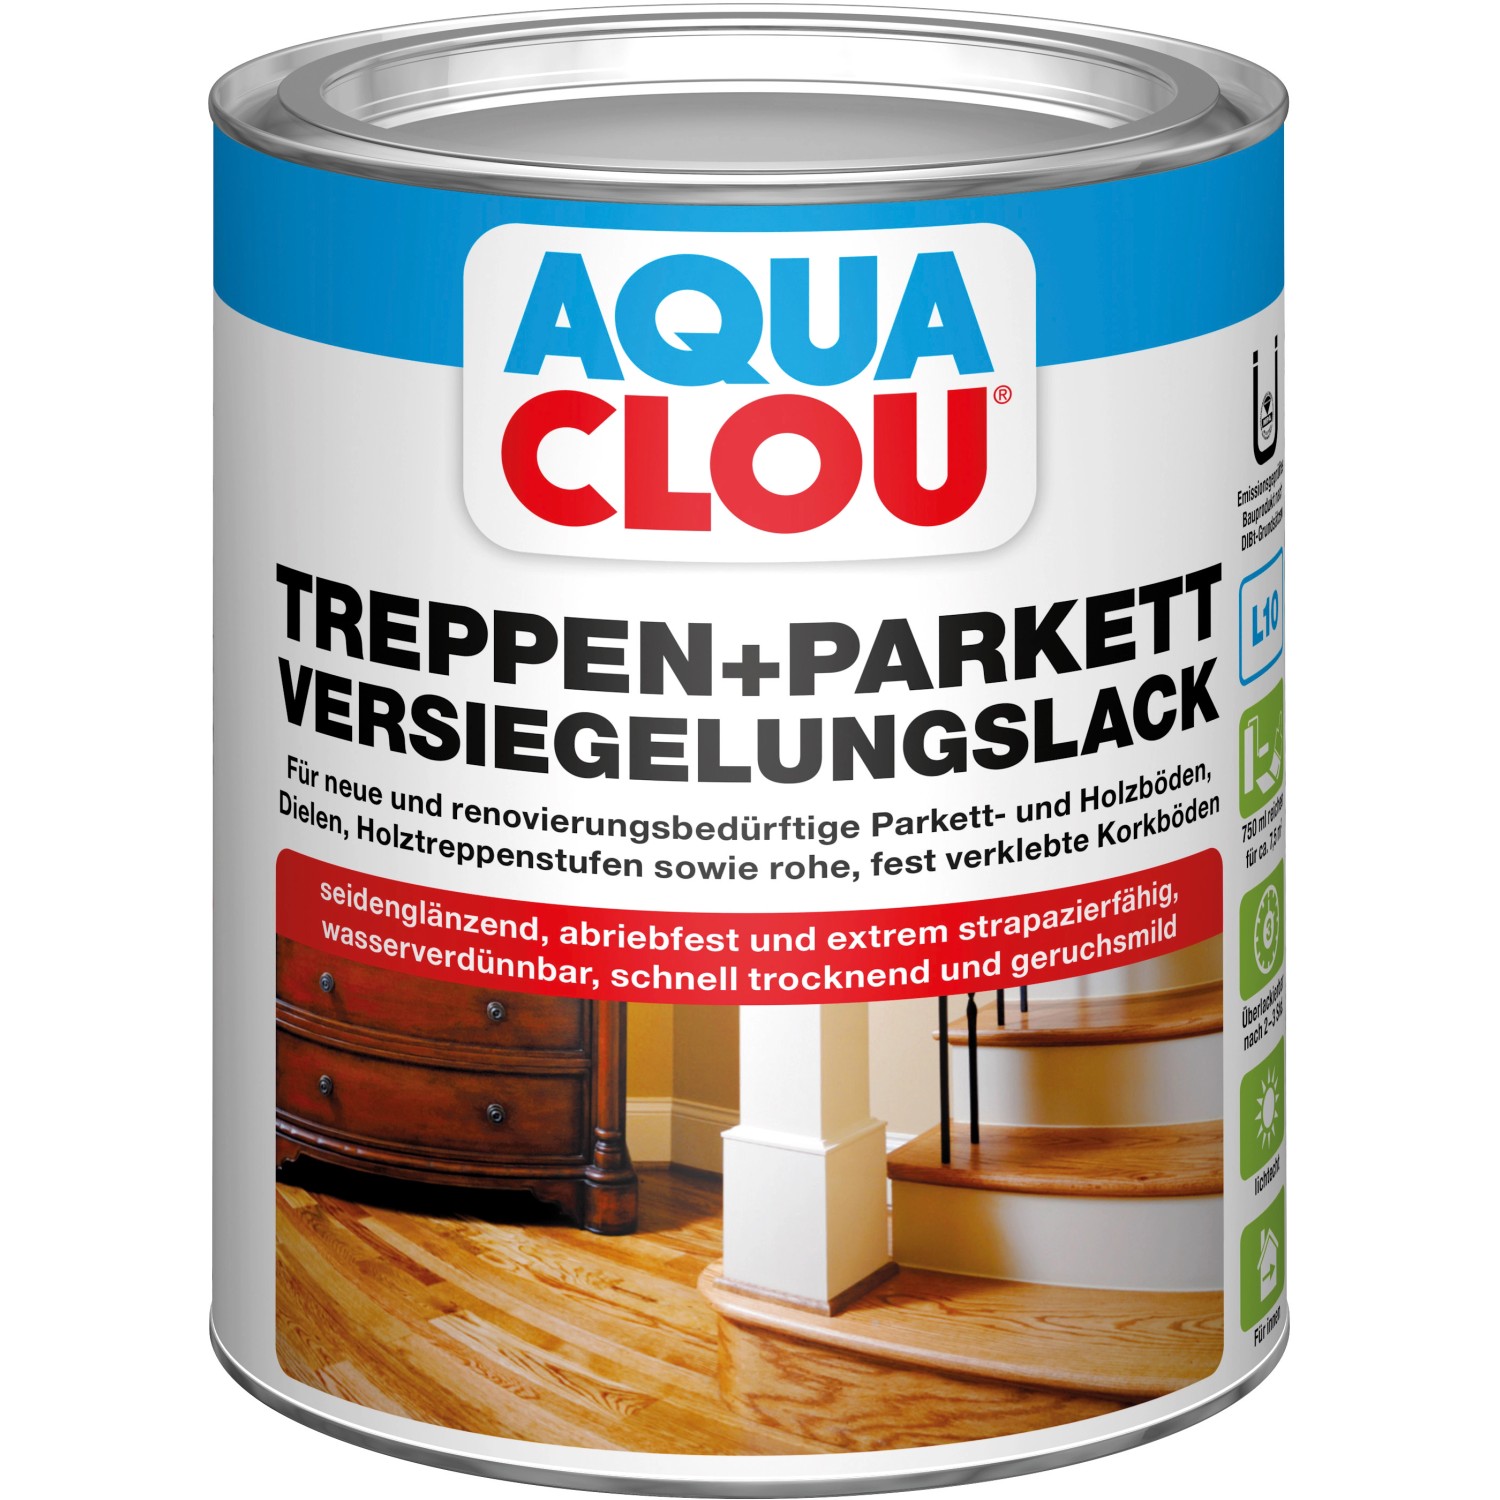 Aqua Clou Treppen+Parkett Versiegelungslack seidenglänzendl 750 ml von CLOU